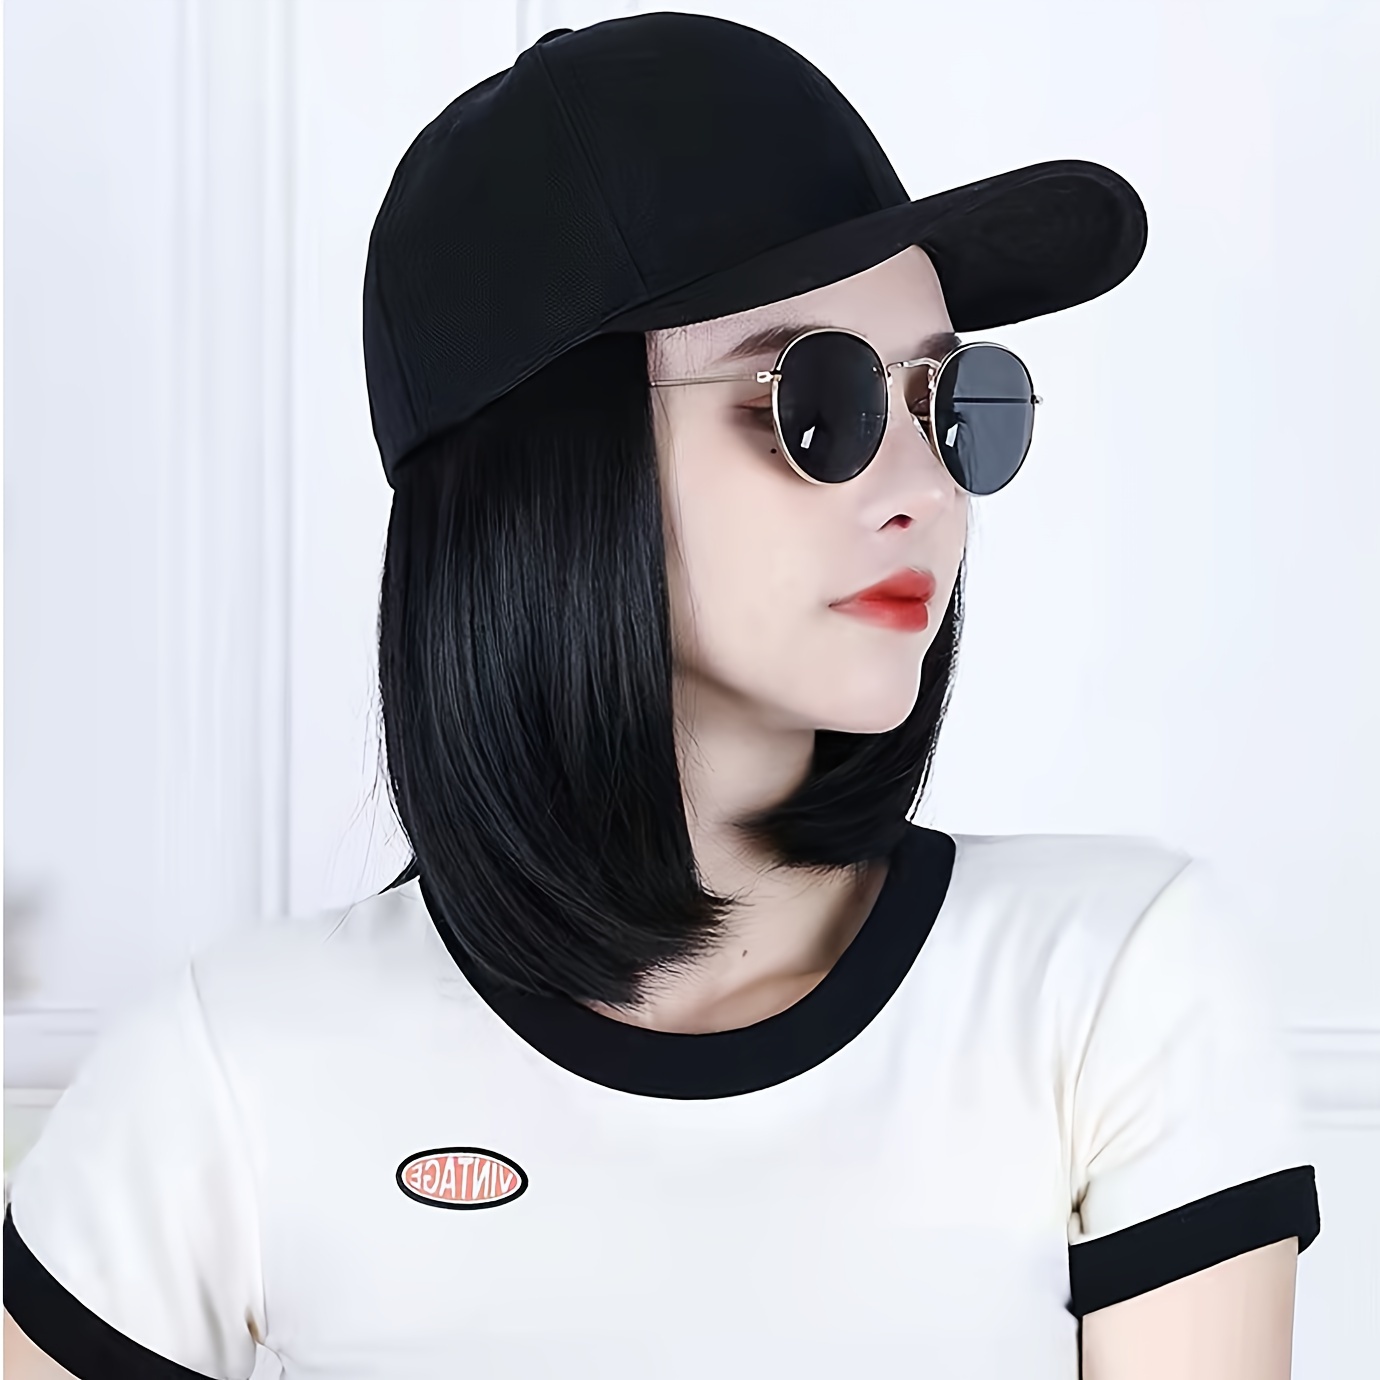 

1pc Women's Thin Face Fashion Hat Wig One-piece Baseball Cap Hair Short Hair Simulation Wig Cap